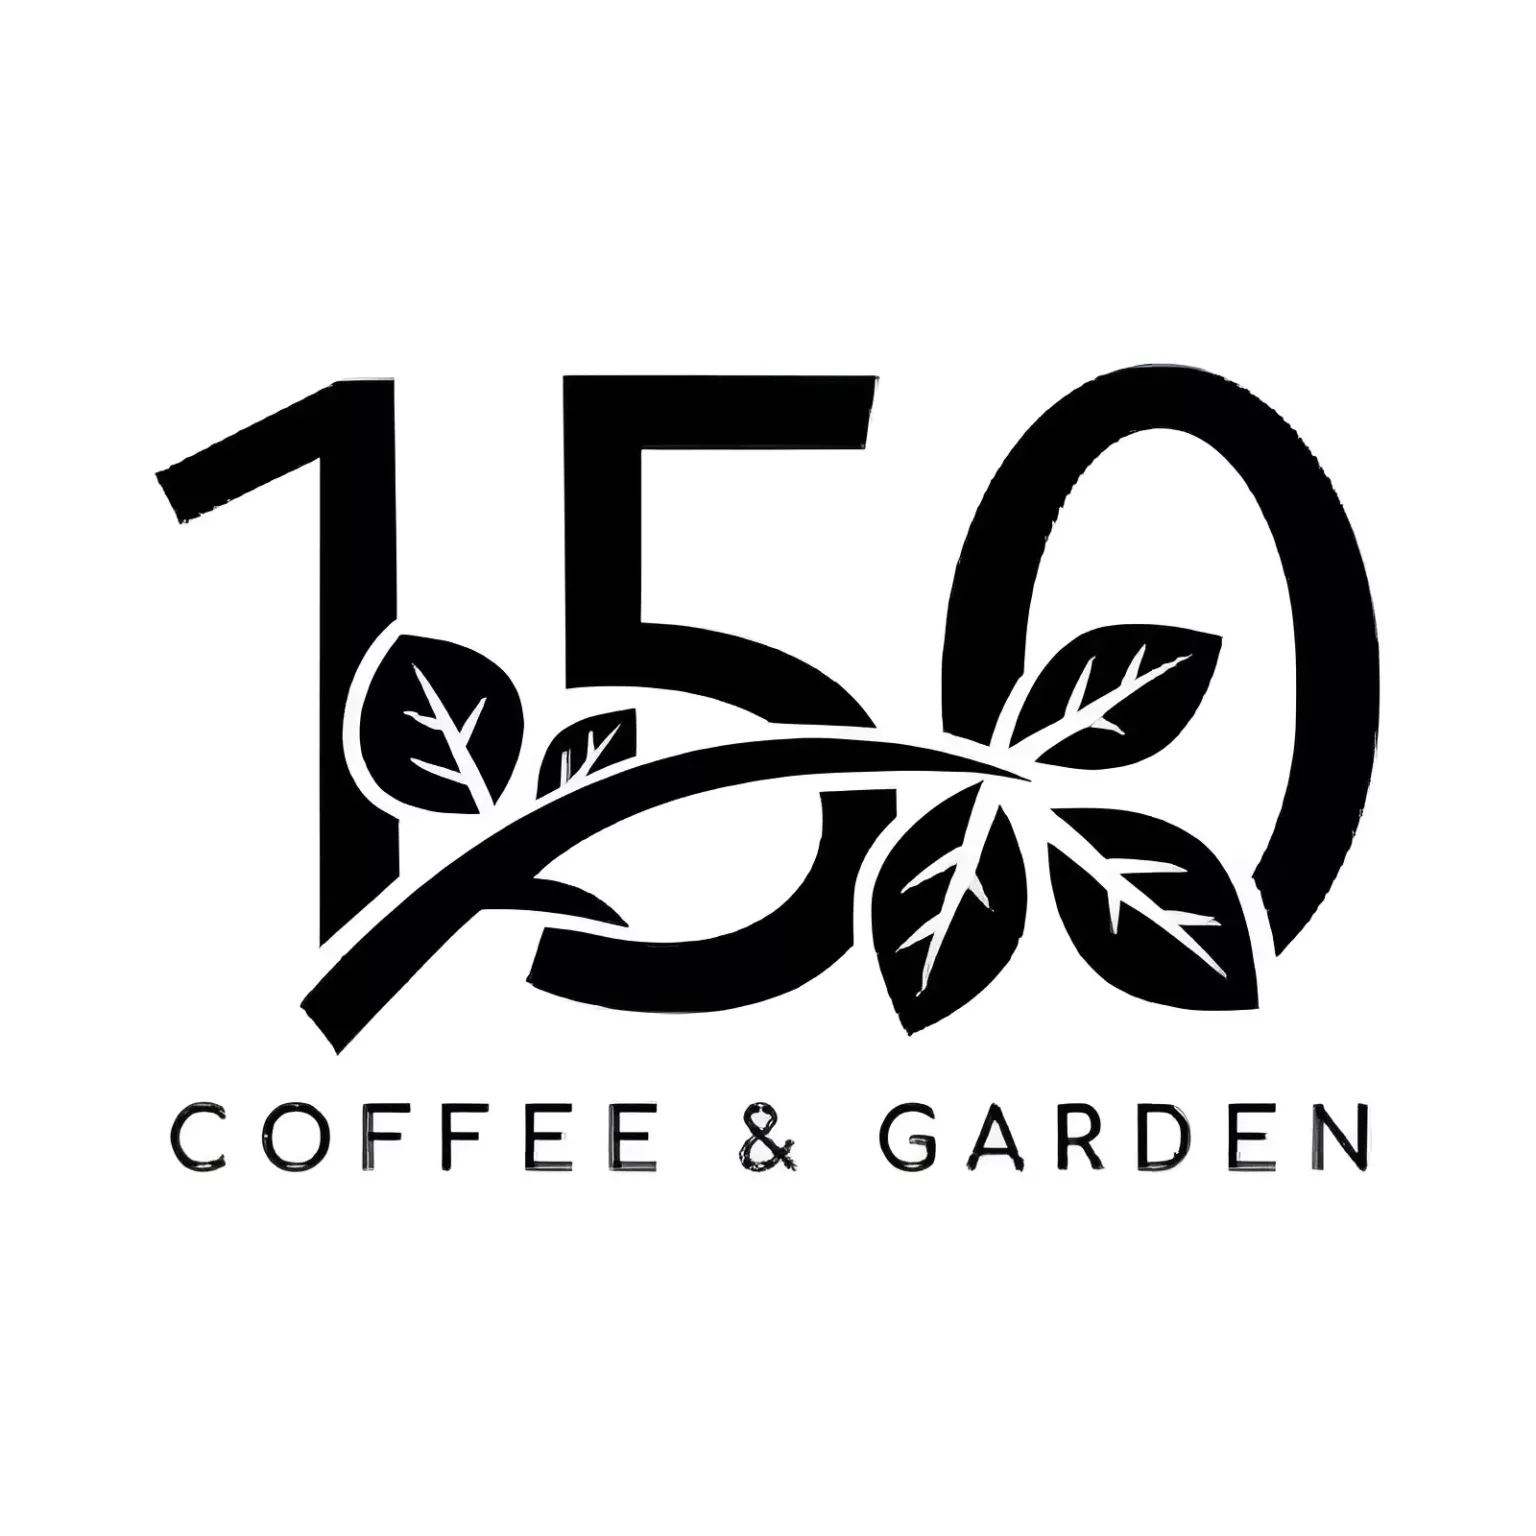 Berikut informasi loker yang diadakan oleh 150 Coffe & Garden.